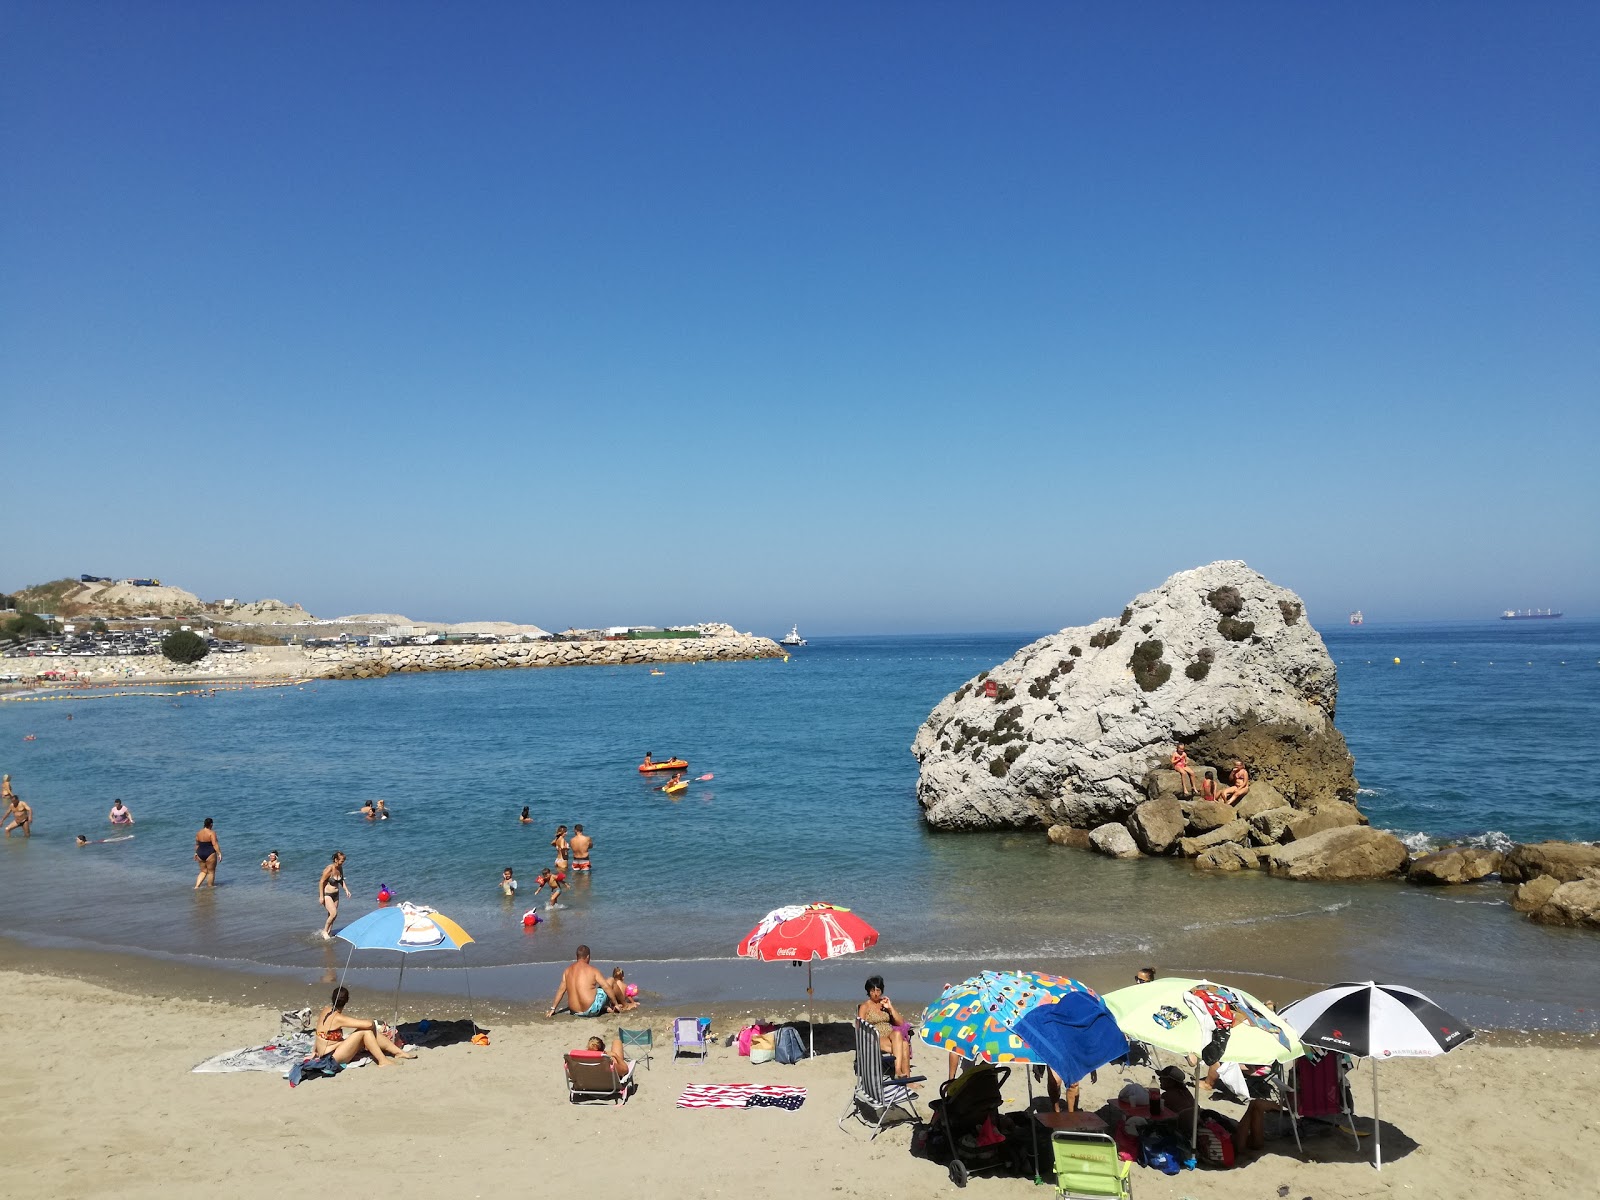 Catalan Bay Beach'in fotoğrafı küçük koy ile birlikte